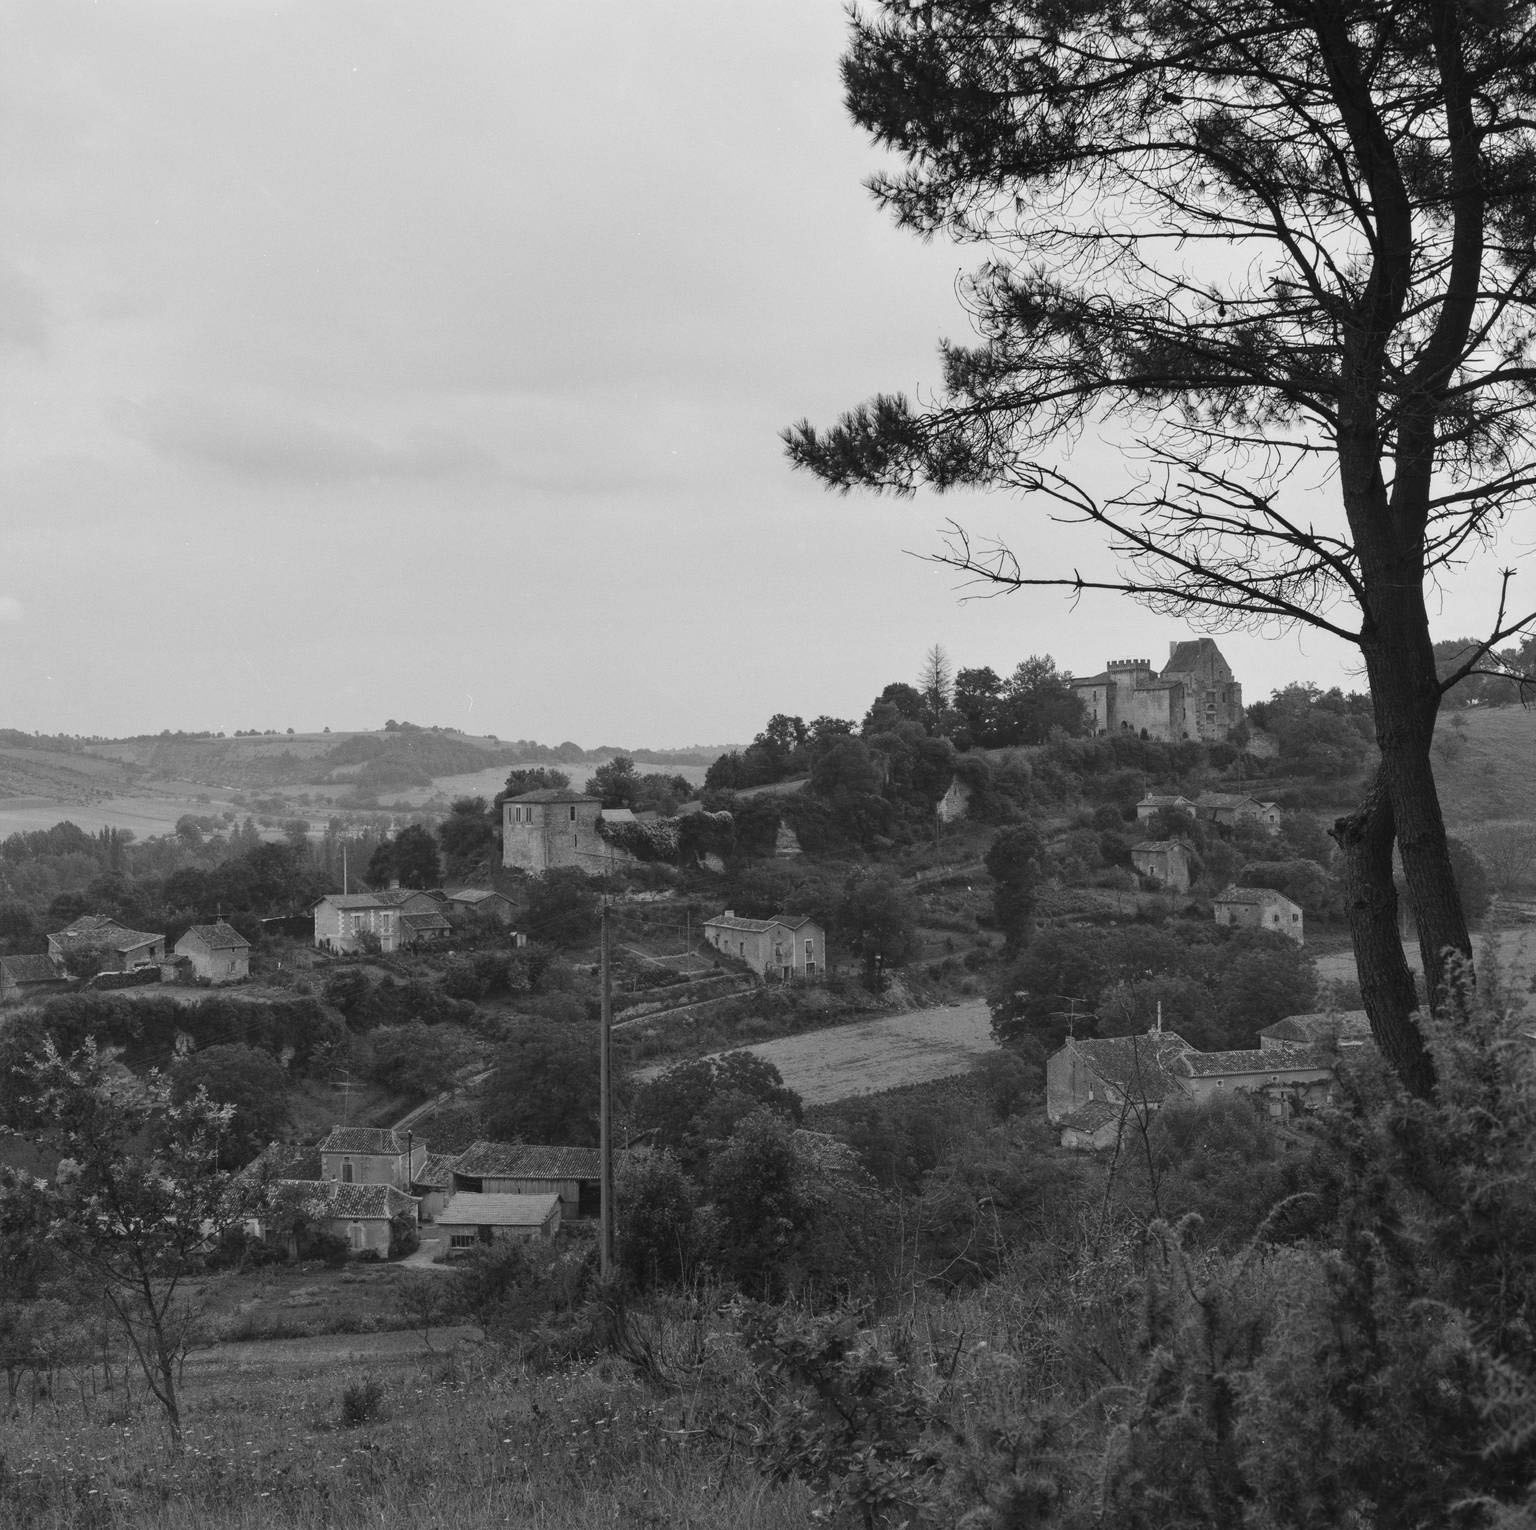 Vue d'ensemble du village et du château depuis la crête d'une colline vers le sud-ouest, vue rapprochée sur le versant est.